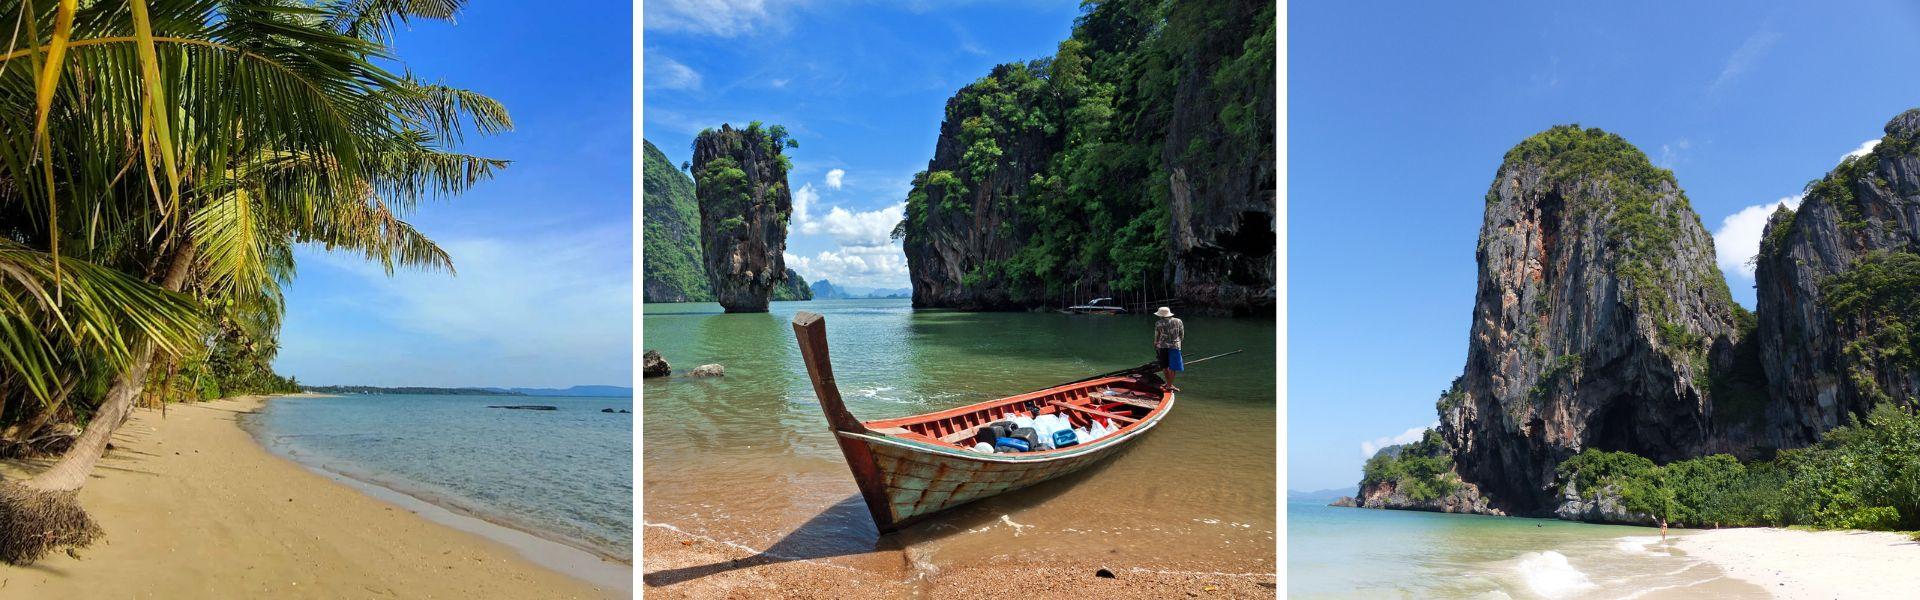 Voyage d’île en île en Thaïlande